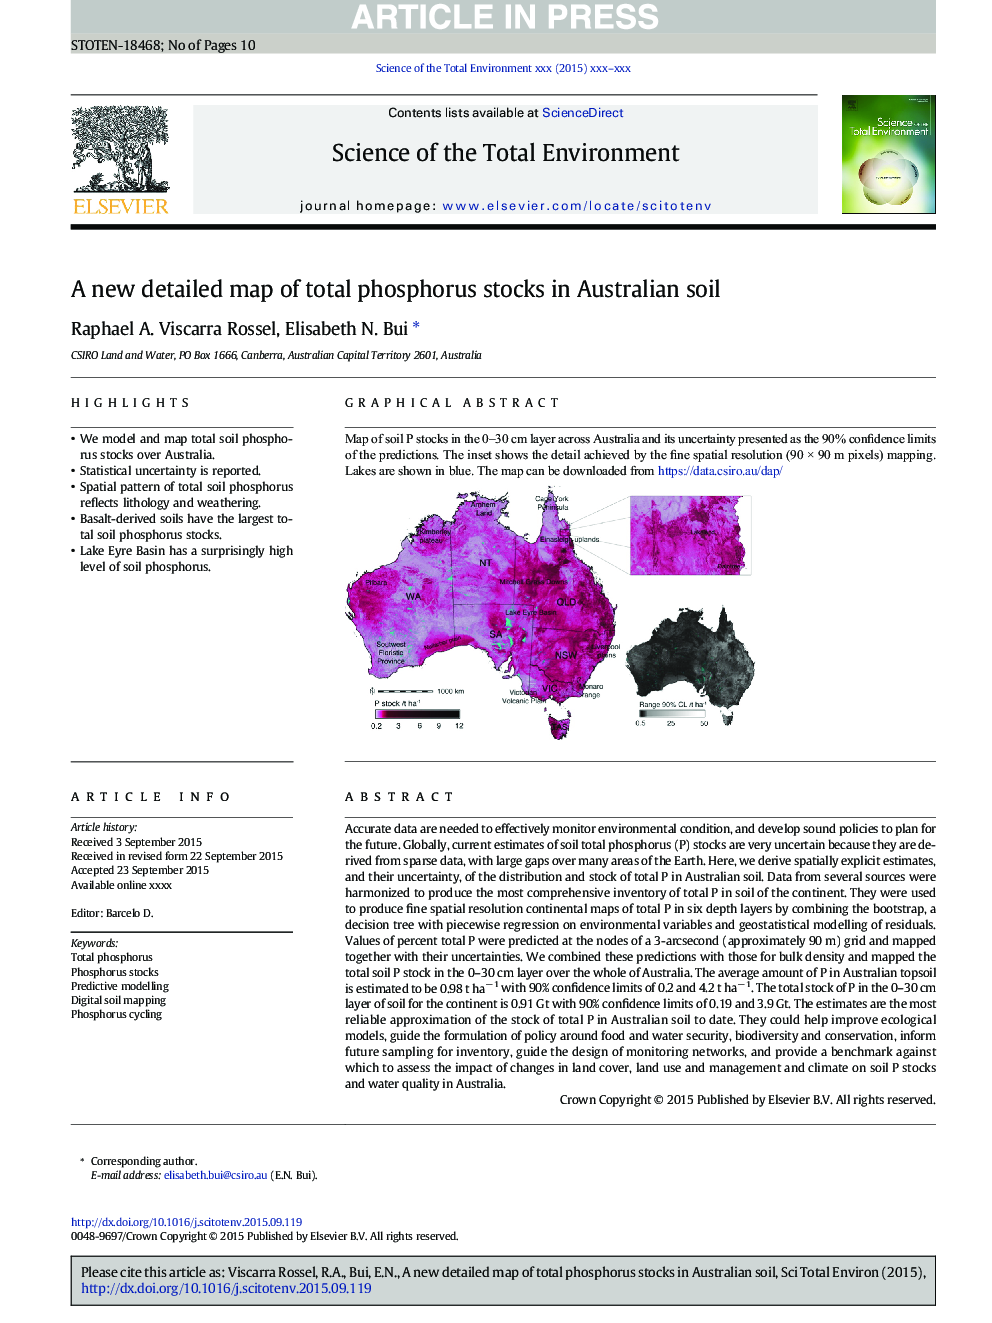 نقشه دقیق جدیدی از کل ذخایر فسفر در خاک استرالیا 